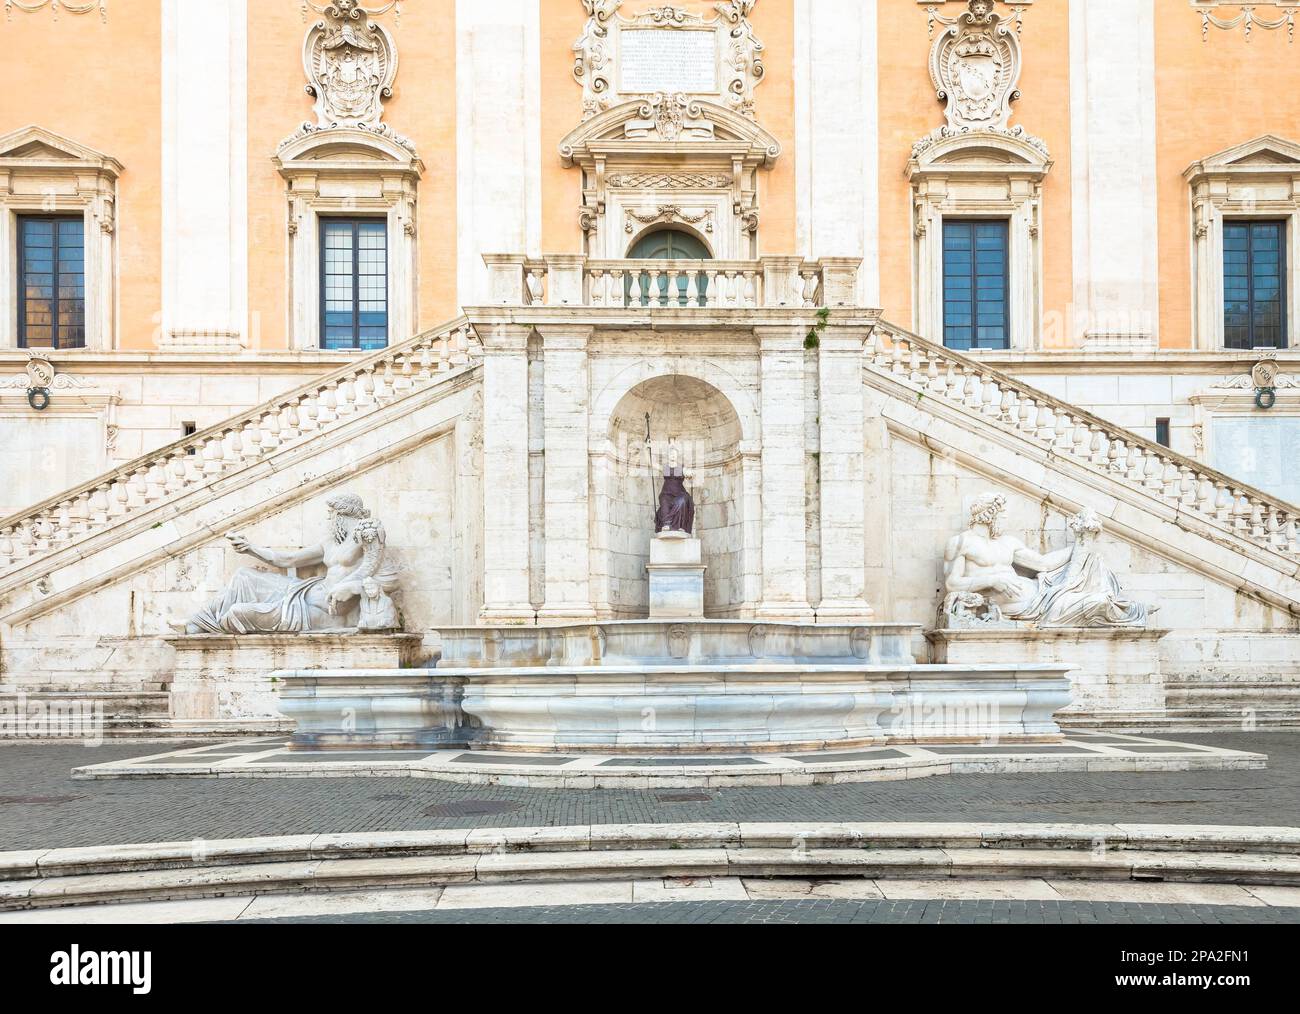 Rom, Italien. Blick auf die Treppe des Palazzo Senatorio, ein Meisterwerk der Renaissance. Die doppelte Treppenrampe wurde von Michelangelo AS entworfen Stockfoto